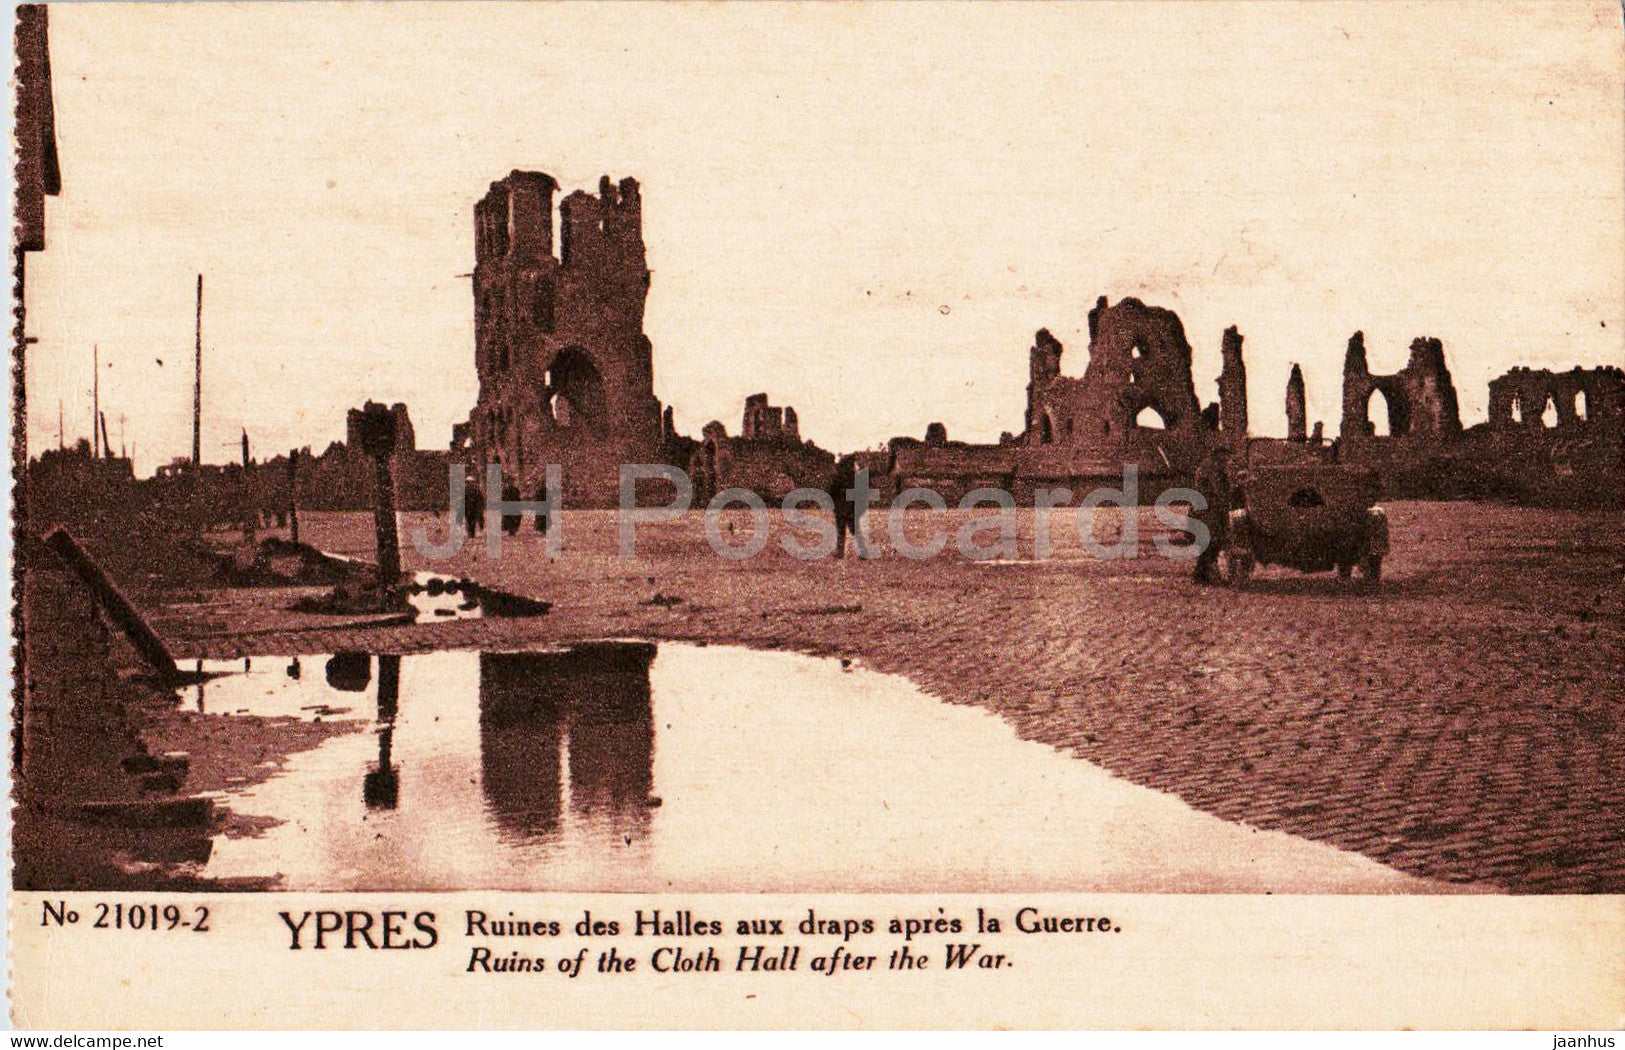 Ypres - Ieper - Ruines des Halles aux Draps apres la Guerre - ruins - WWI - military - old postcard - Belgium - unused - JH Postcards